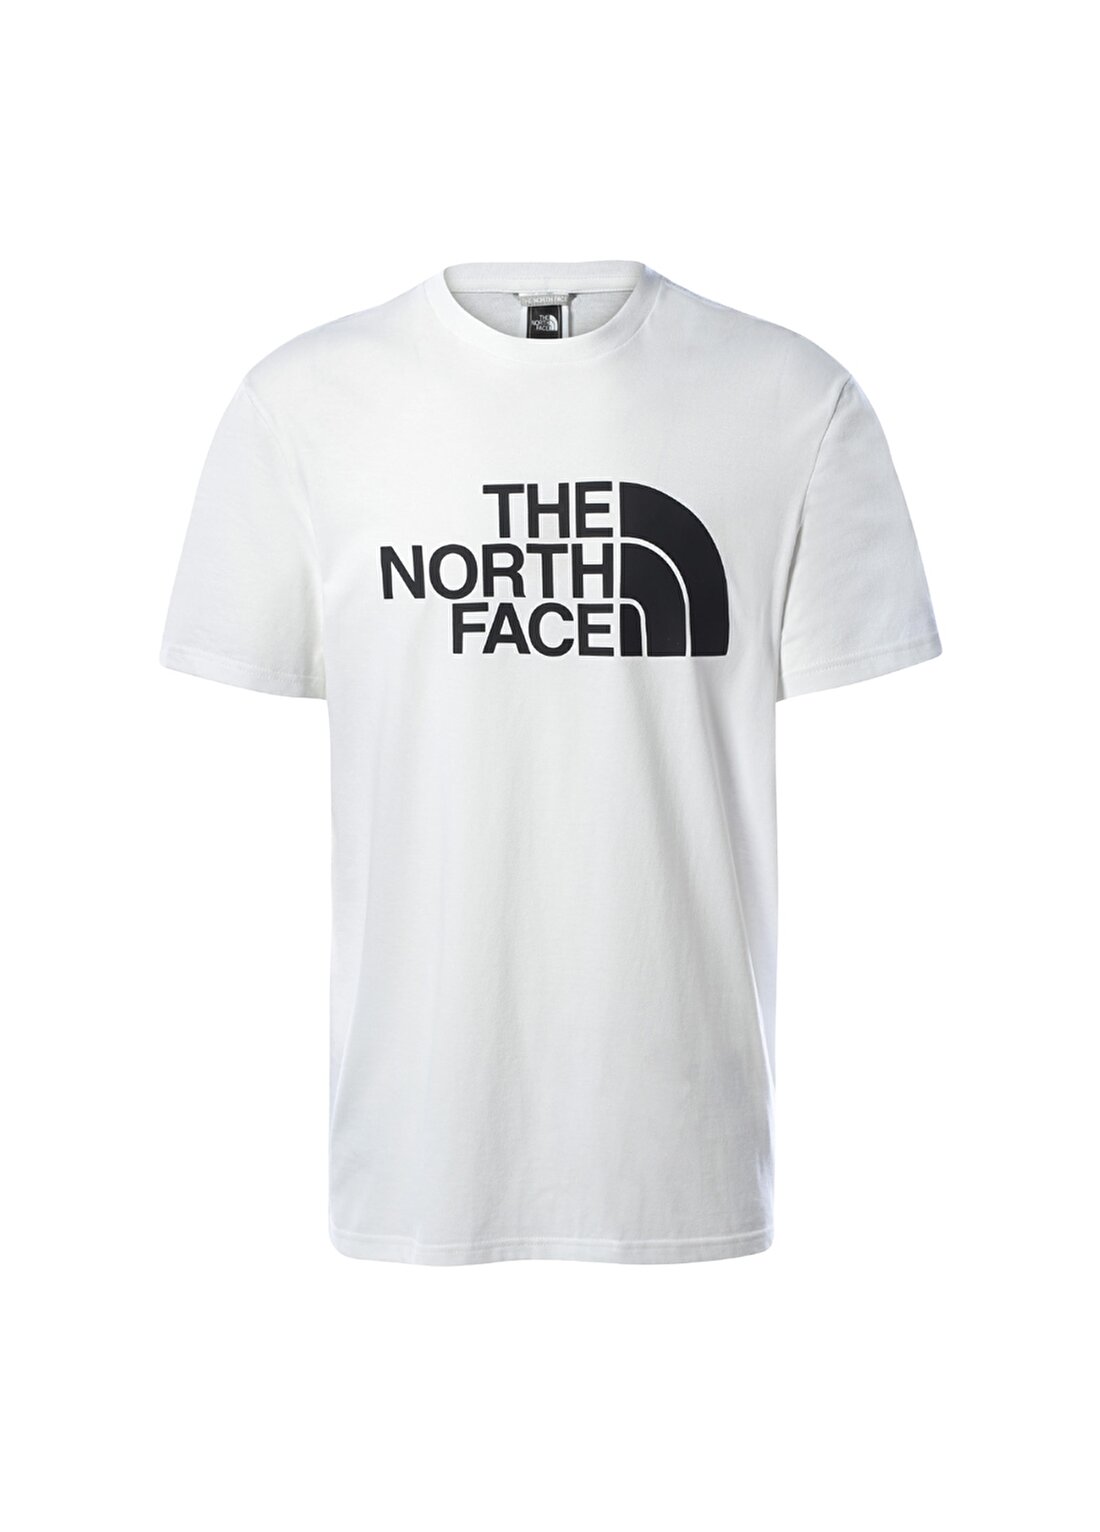 The North Face Nf0a4m8mfn41 M L/S Half Dome Tee - Bisiklet Yaka Normal Kalıp Düz Beyaz Erkek T-Shirt